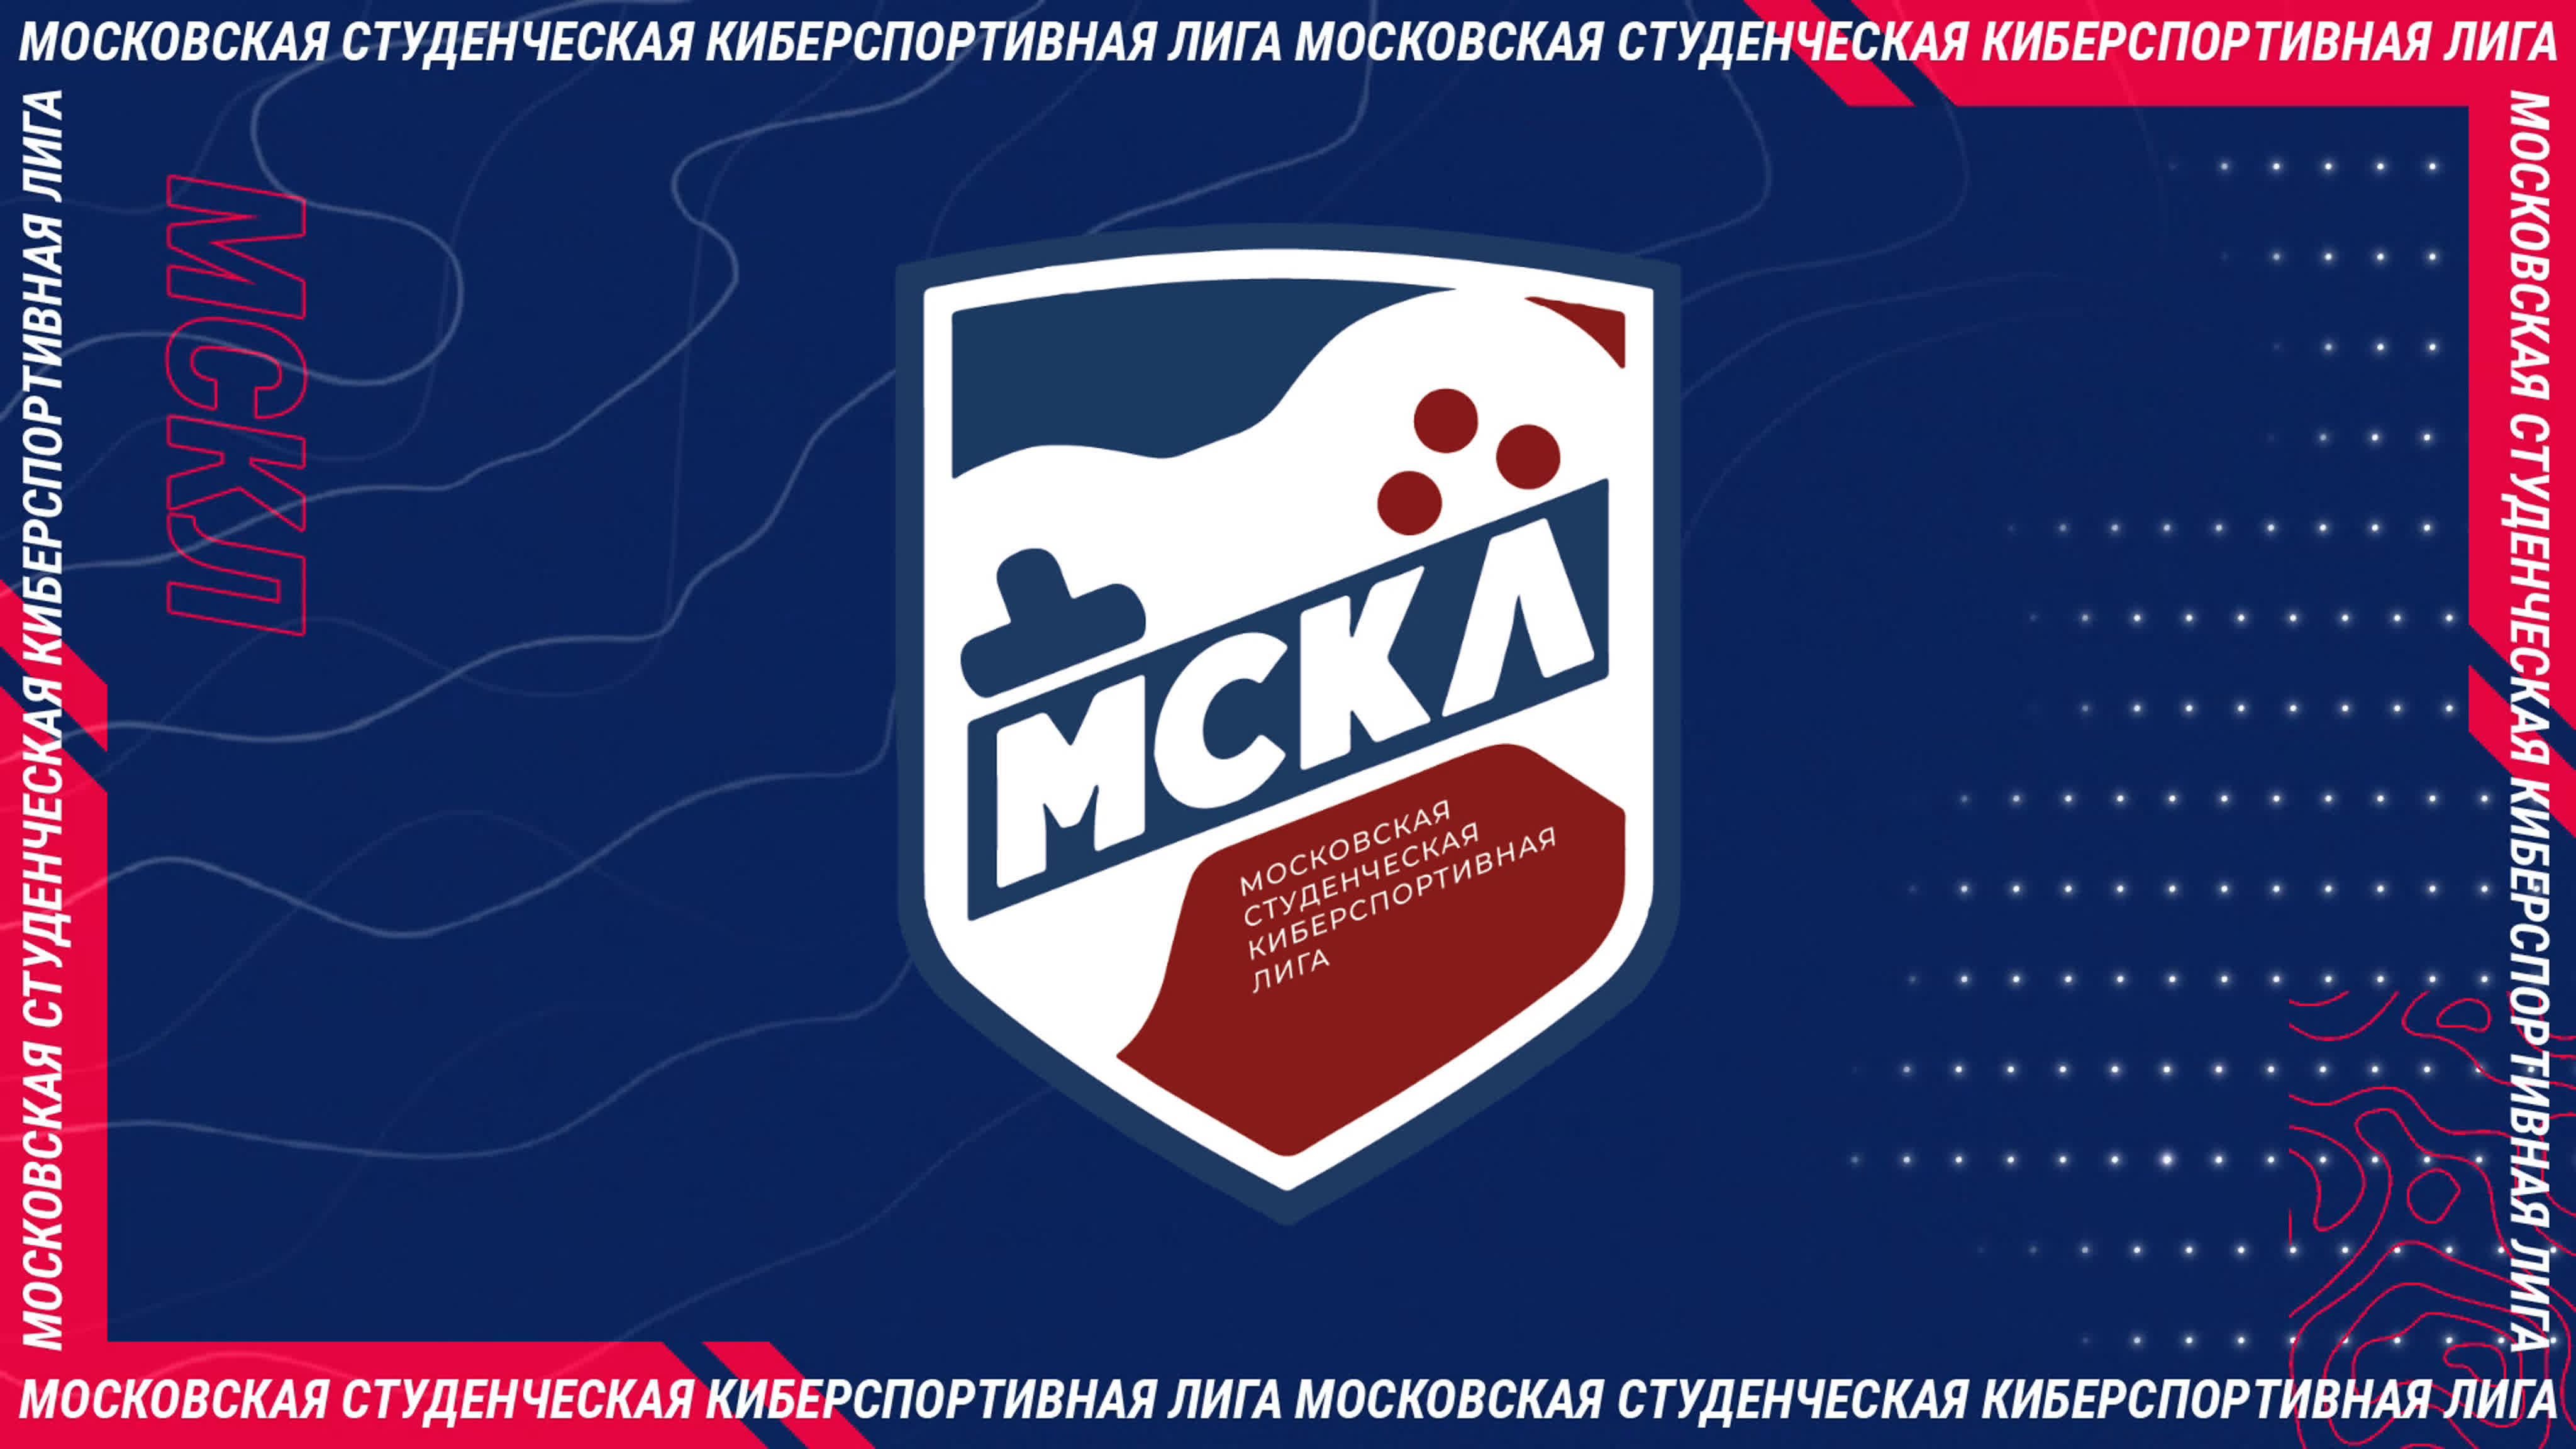 Стартовал высший дивизион Московской студенческой киберспортивной лиги